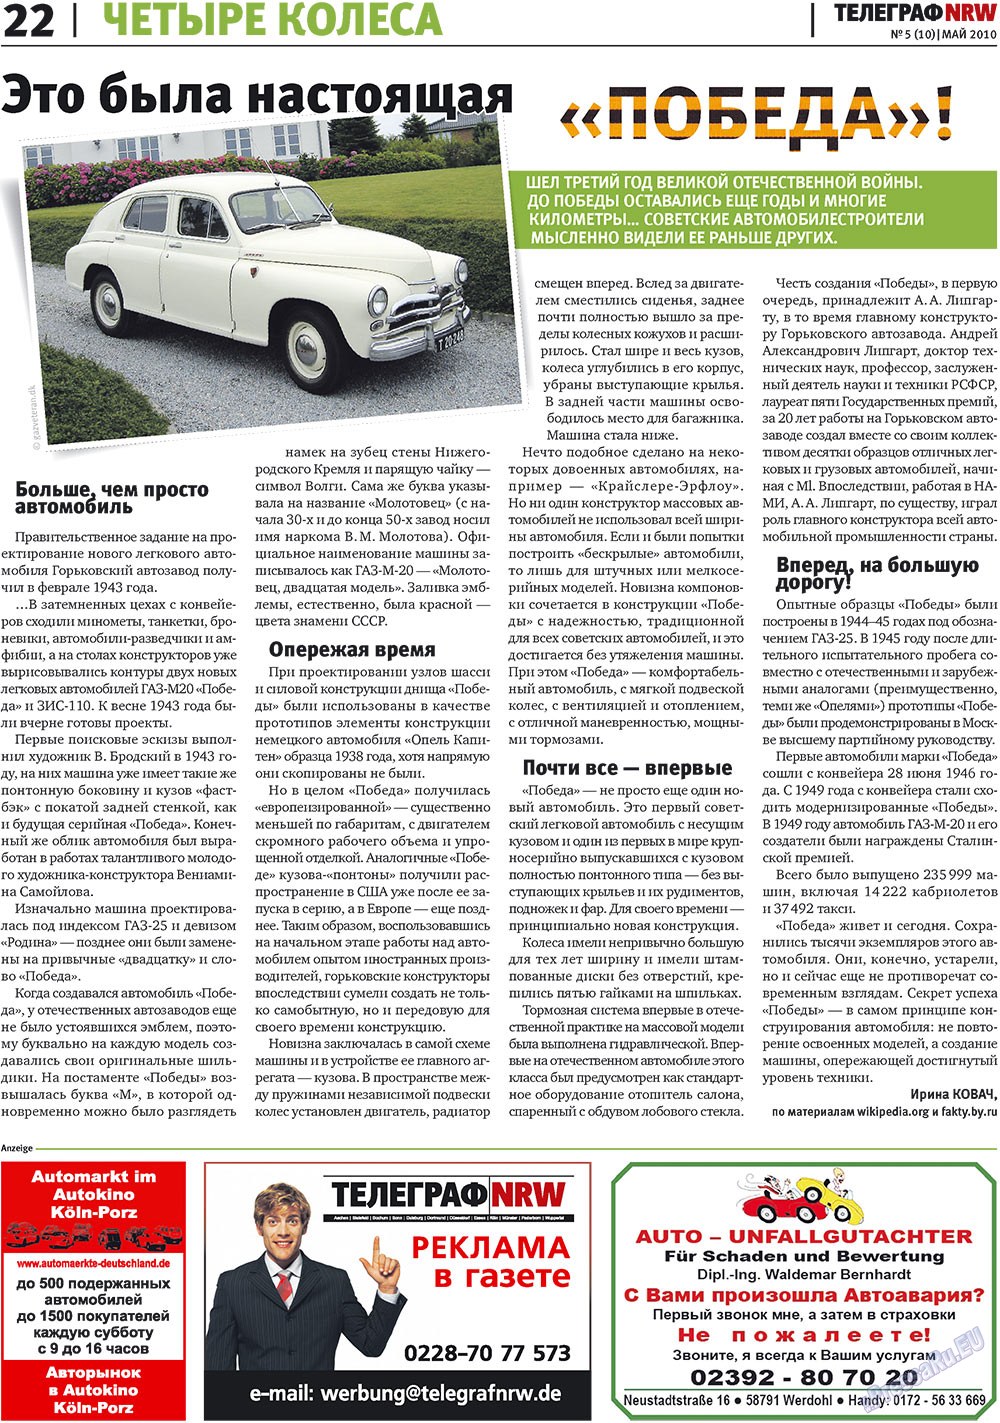 Телеграф NRW (газета). 2010 год, номер 5, стр. 22